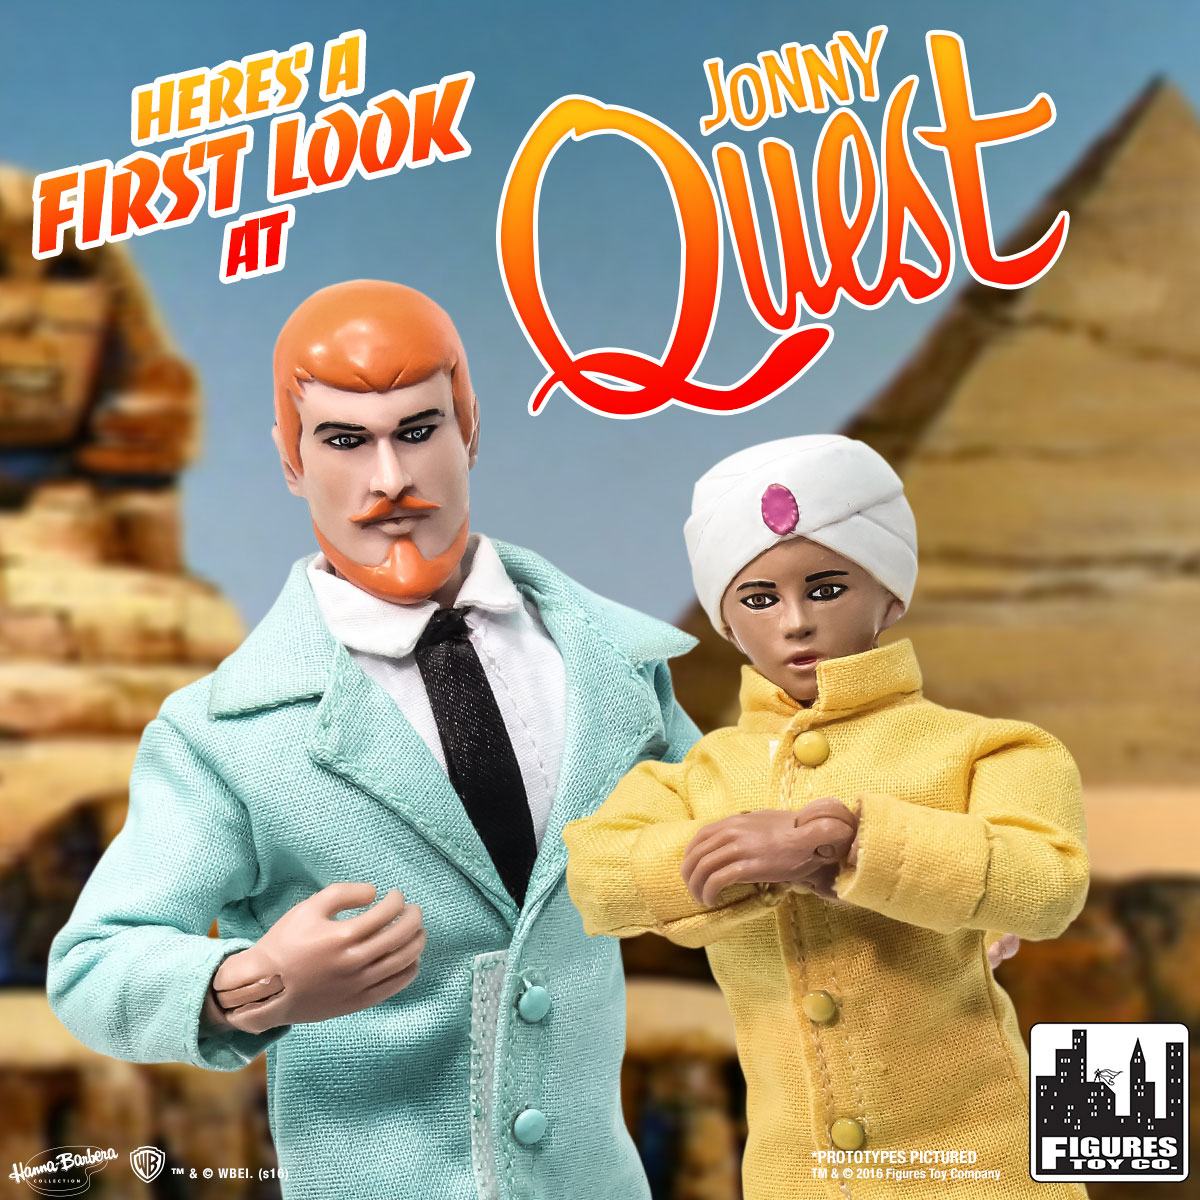 Quest Dr Jonny Quest Retro Style Action Figures Series 1 